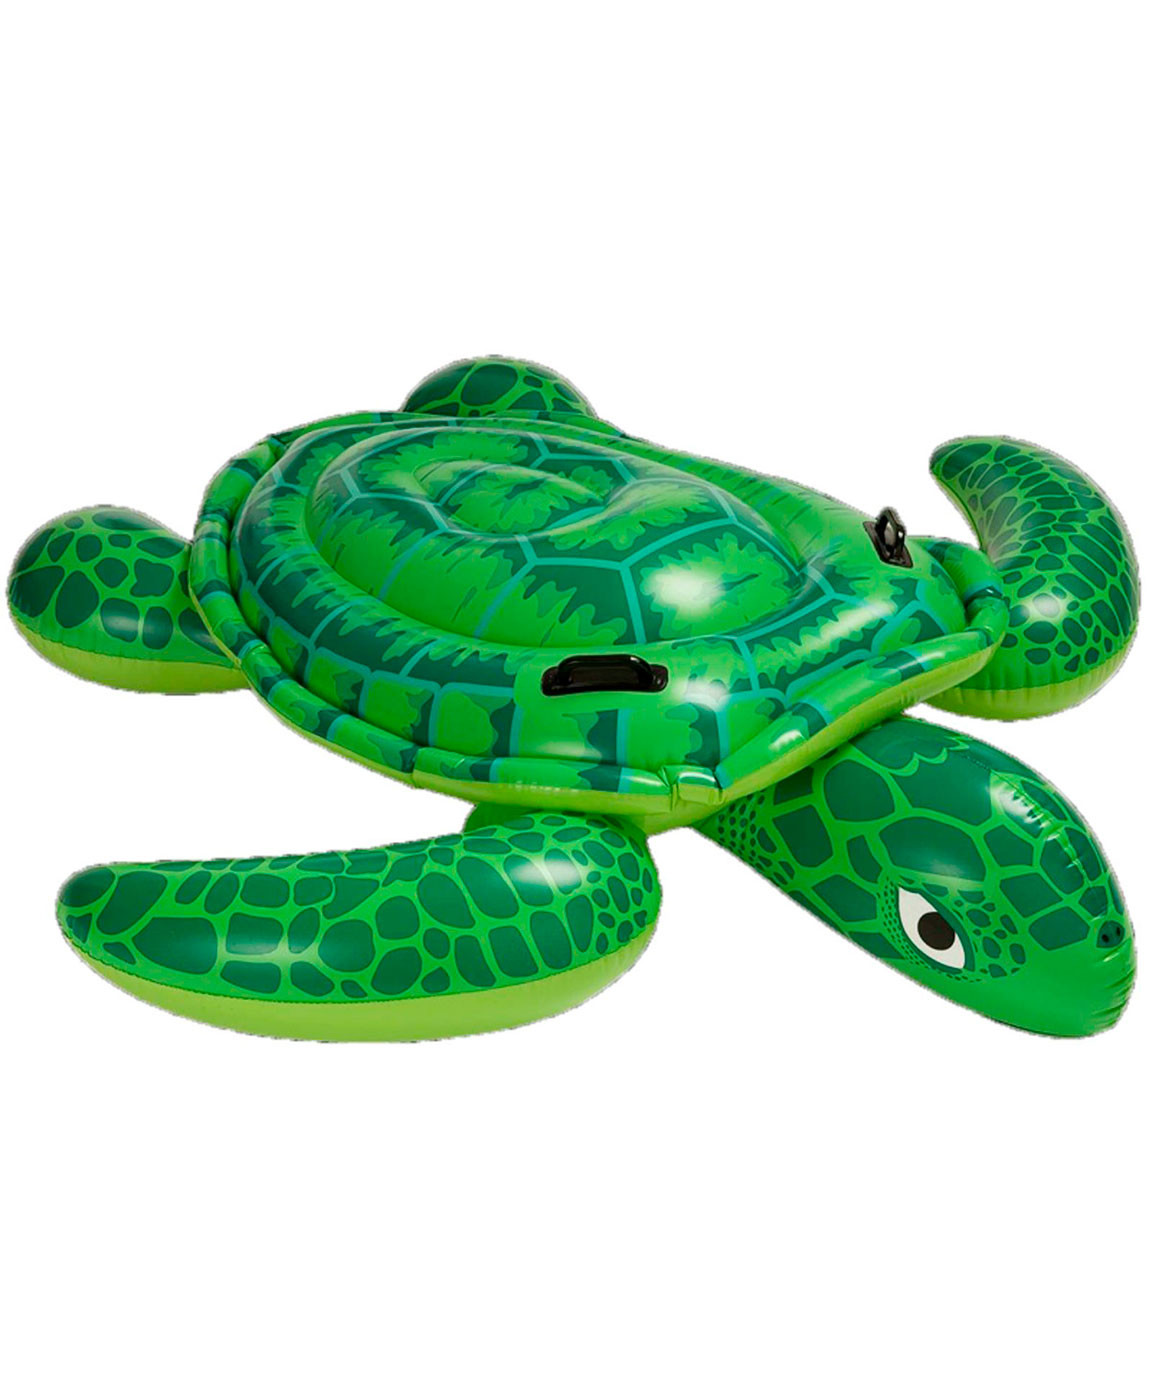 Надувная игрушка Intex Морская черепаха 57524 игрушка надувная для плавания крокодил 168 86см малый 58546np